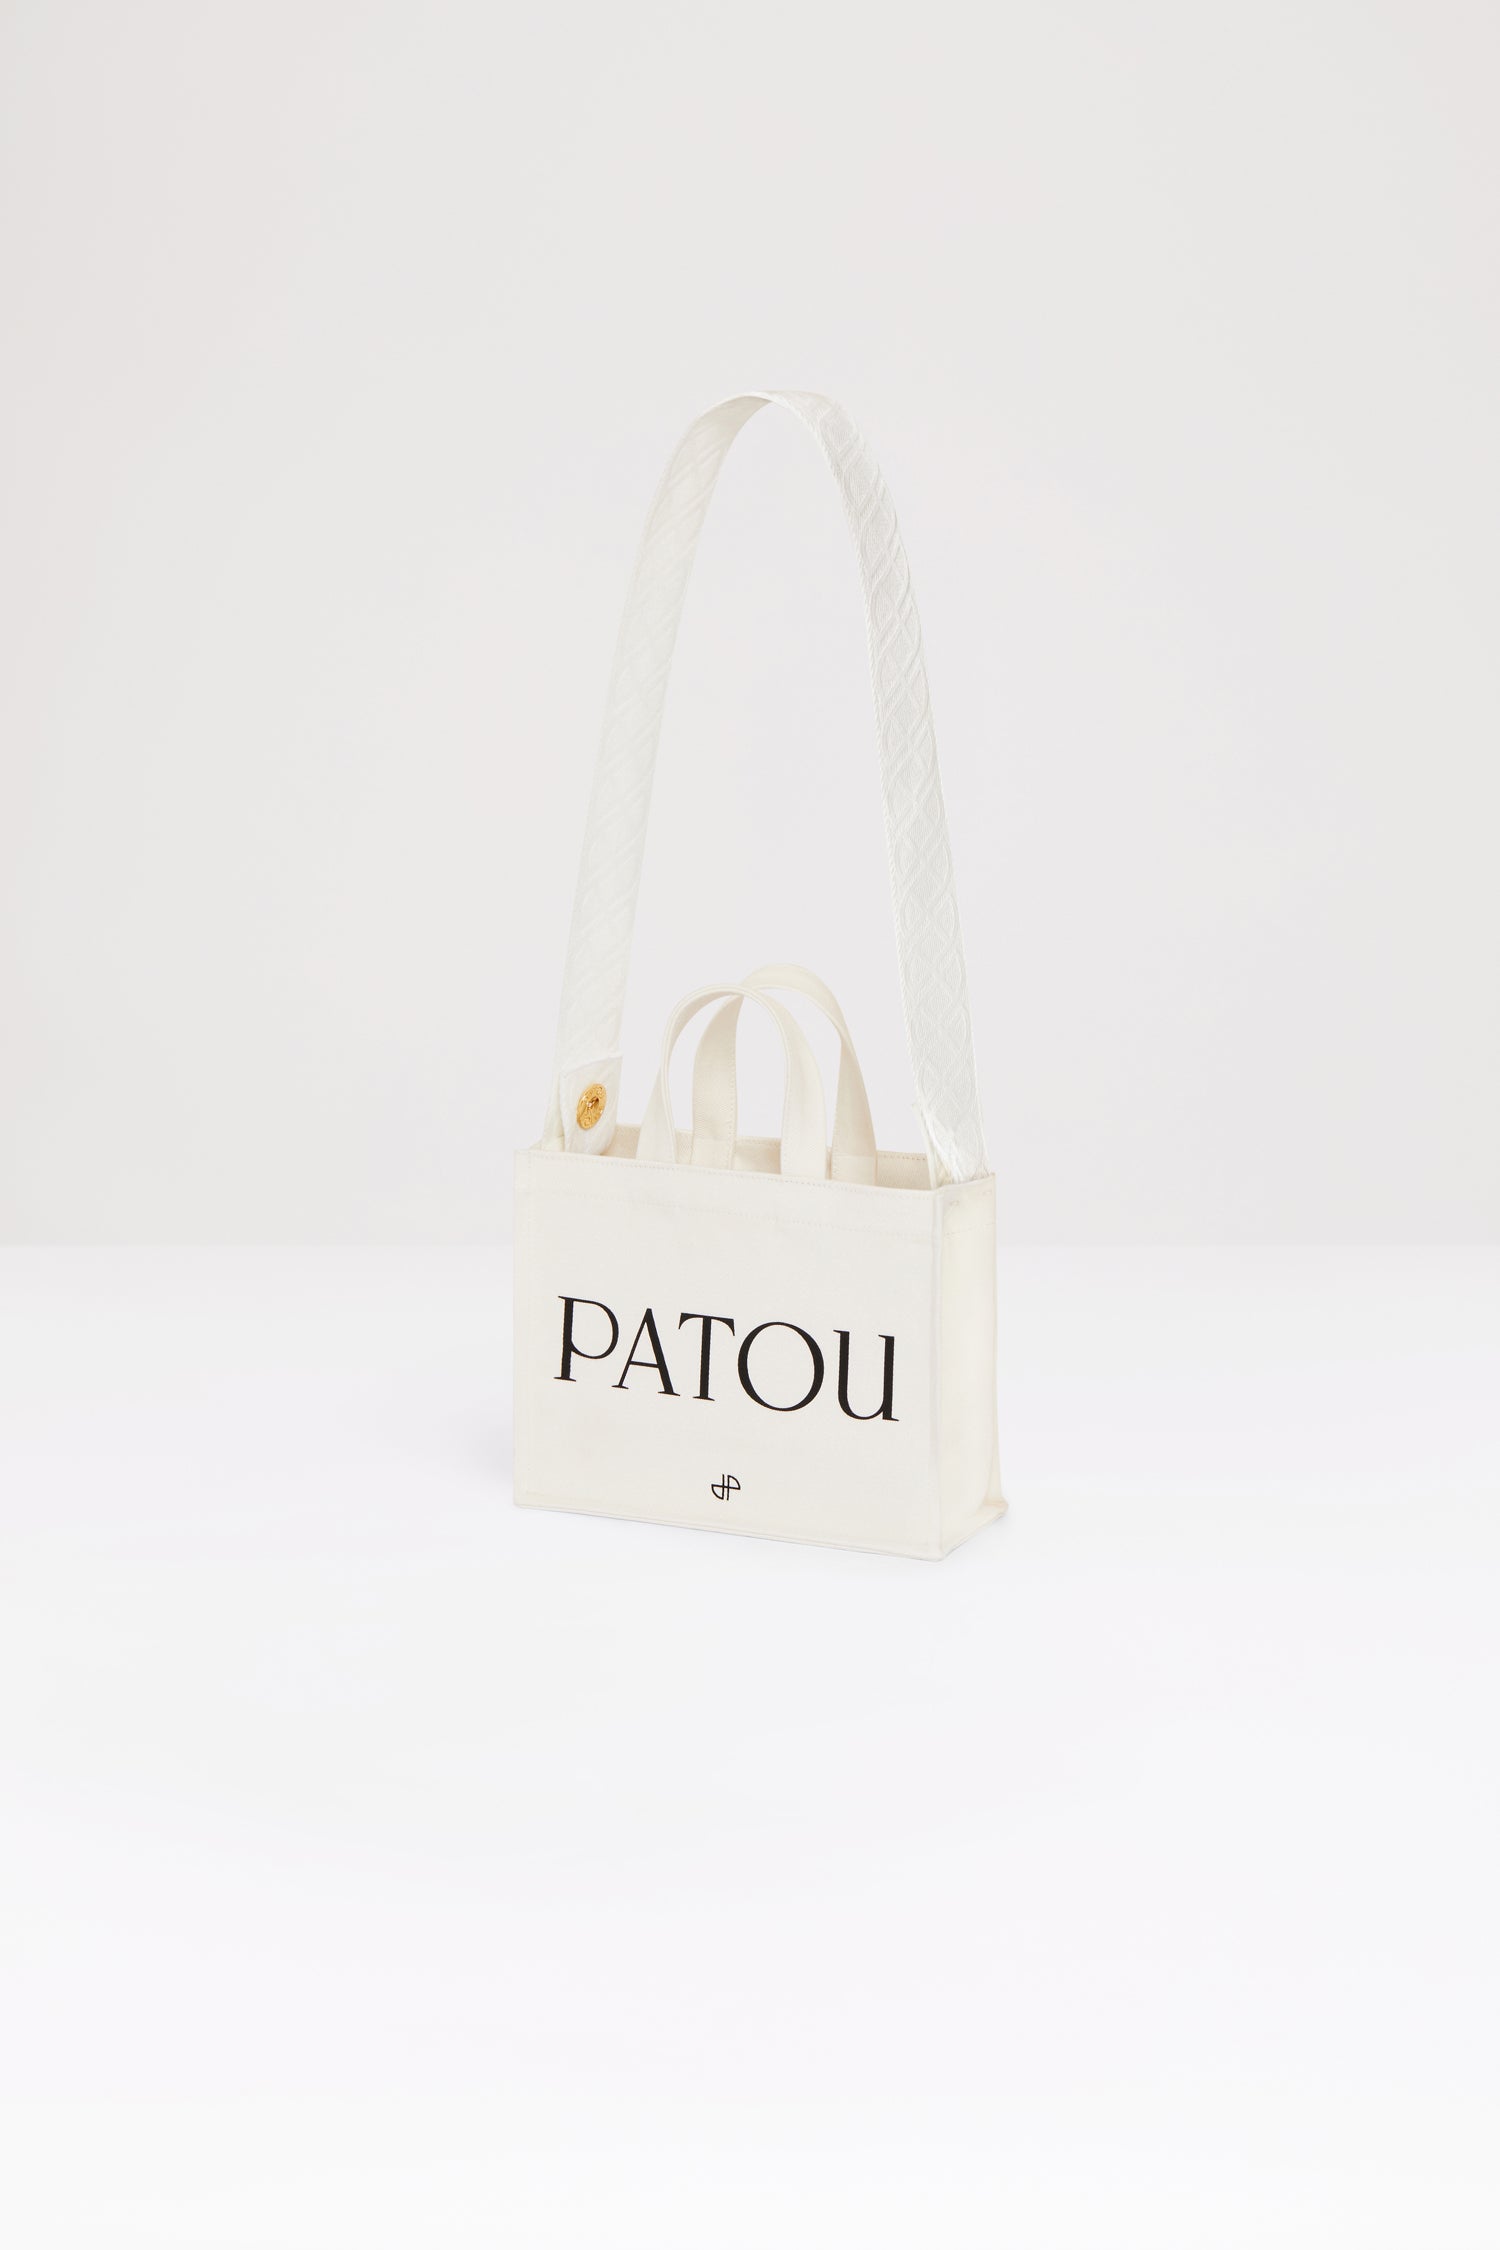 Patou | オーガニックコットン スモール パトゥ キャンバストート